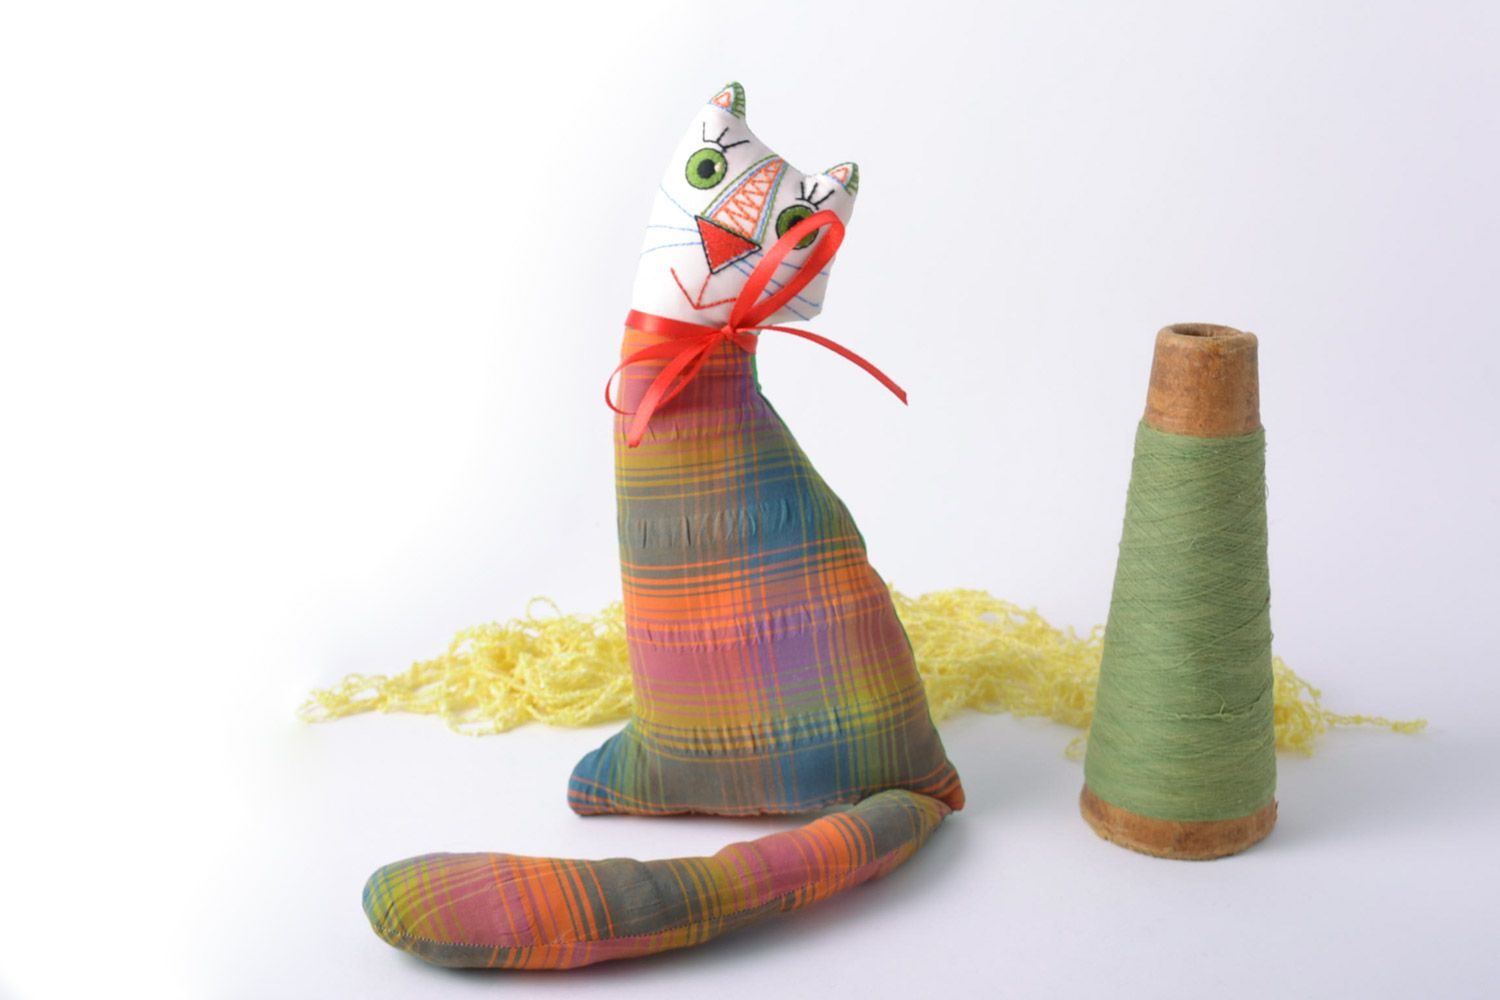 Мягкая игрушка ручной работы кот из ткани в клеточку смешной с бантом хенд мэйд фото 1